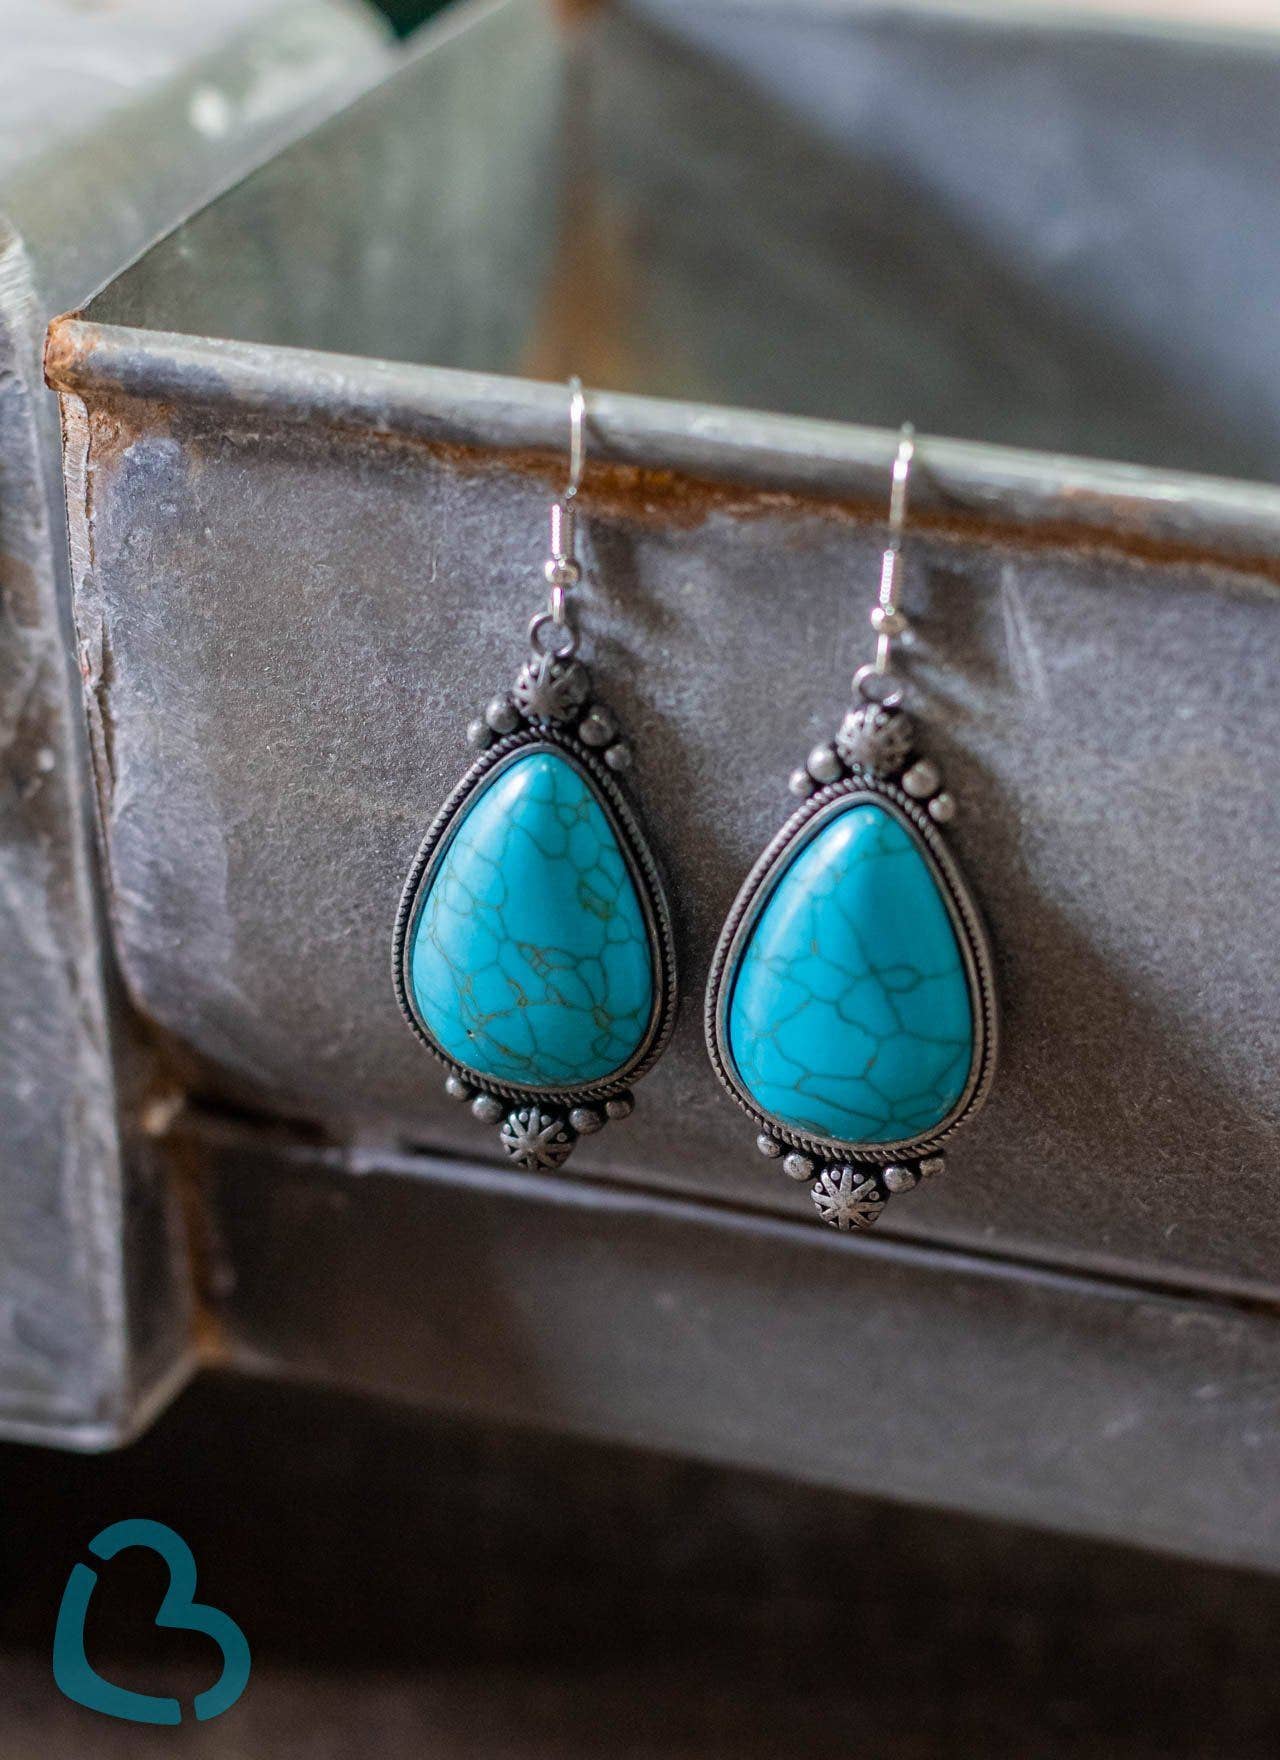 The Brenham Earrings in Turquoise